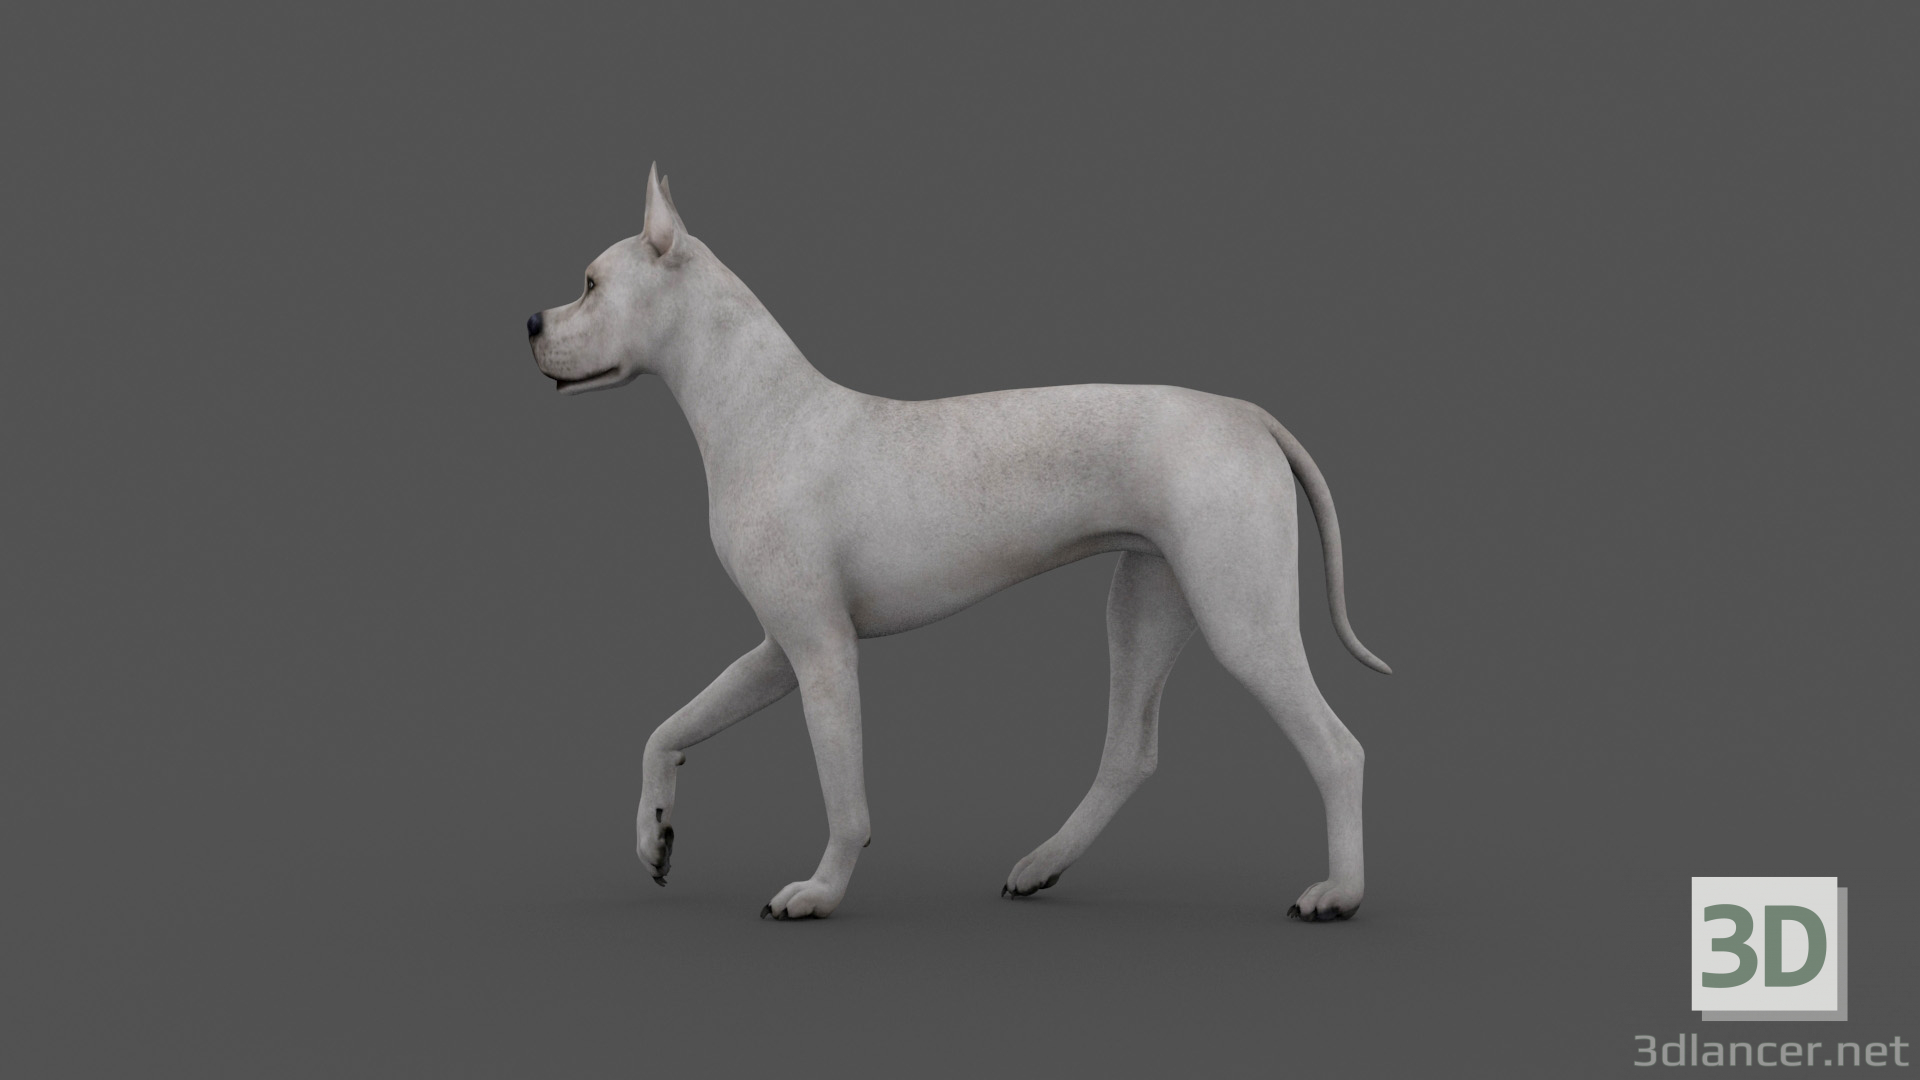 3d FDGD-001 Animation dog model buy - render